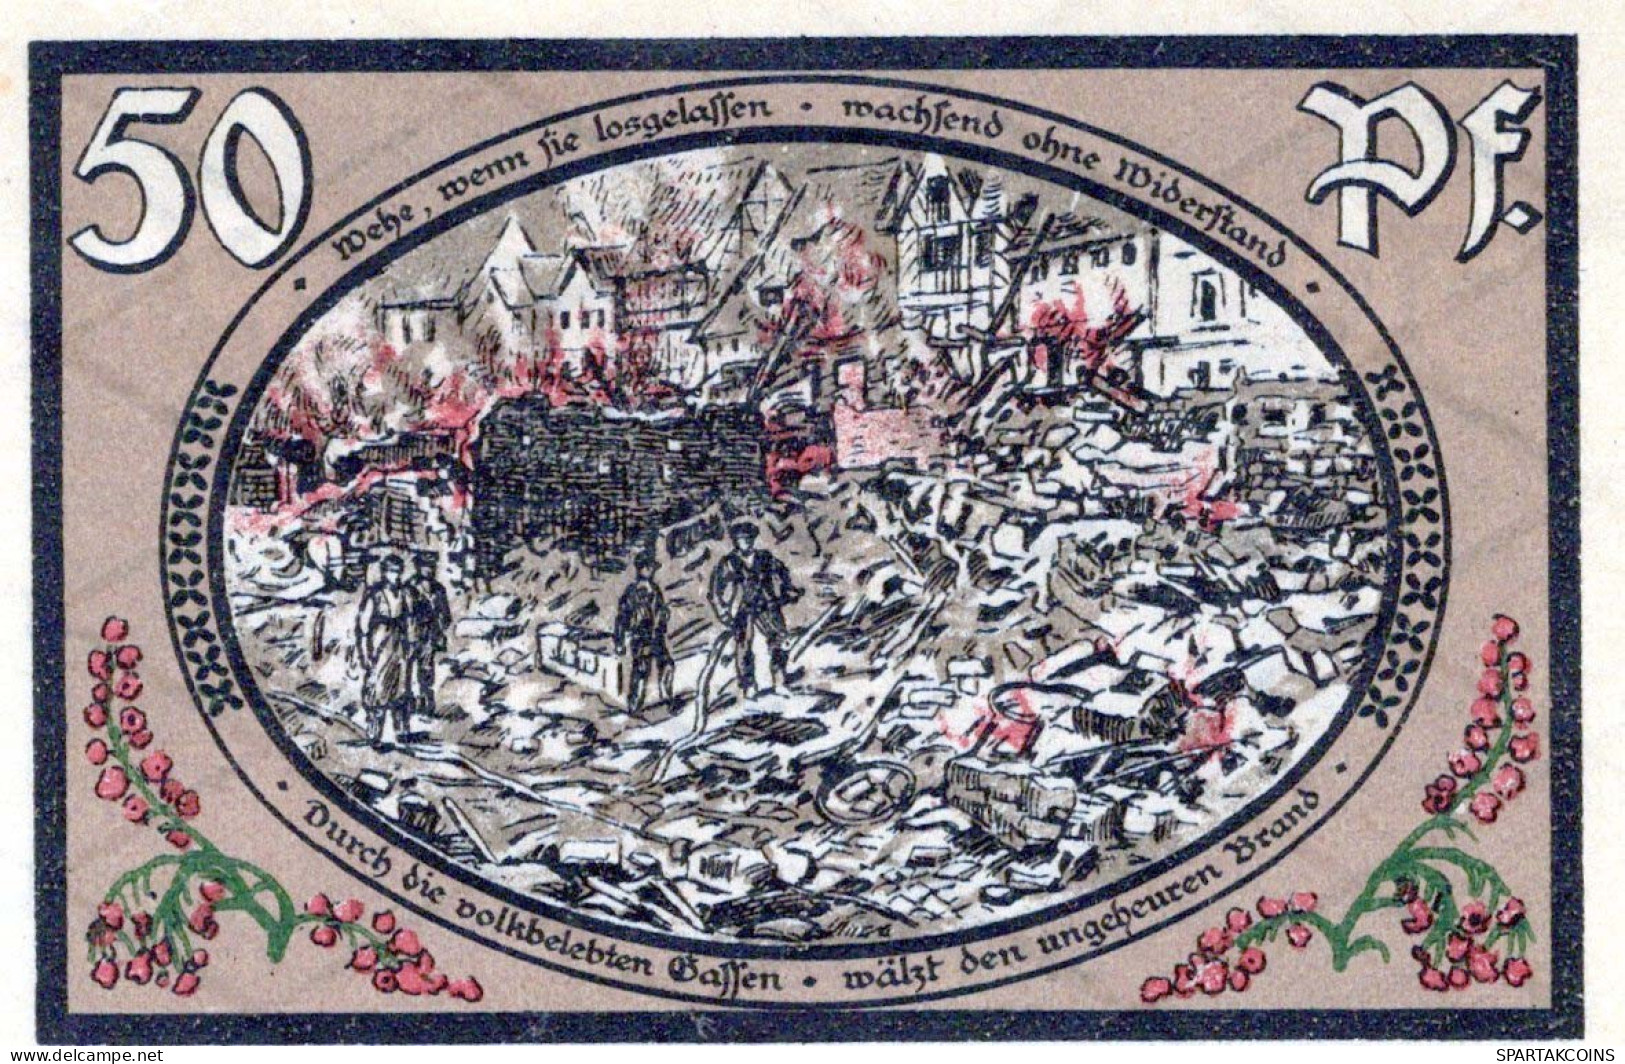 50 PFENNIG 1921 Stadt WASUNGEN Thuringia UNC DEUTSCHLAND Notgeld Banknote #PH911 - [11] Lokale Uitgaven